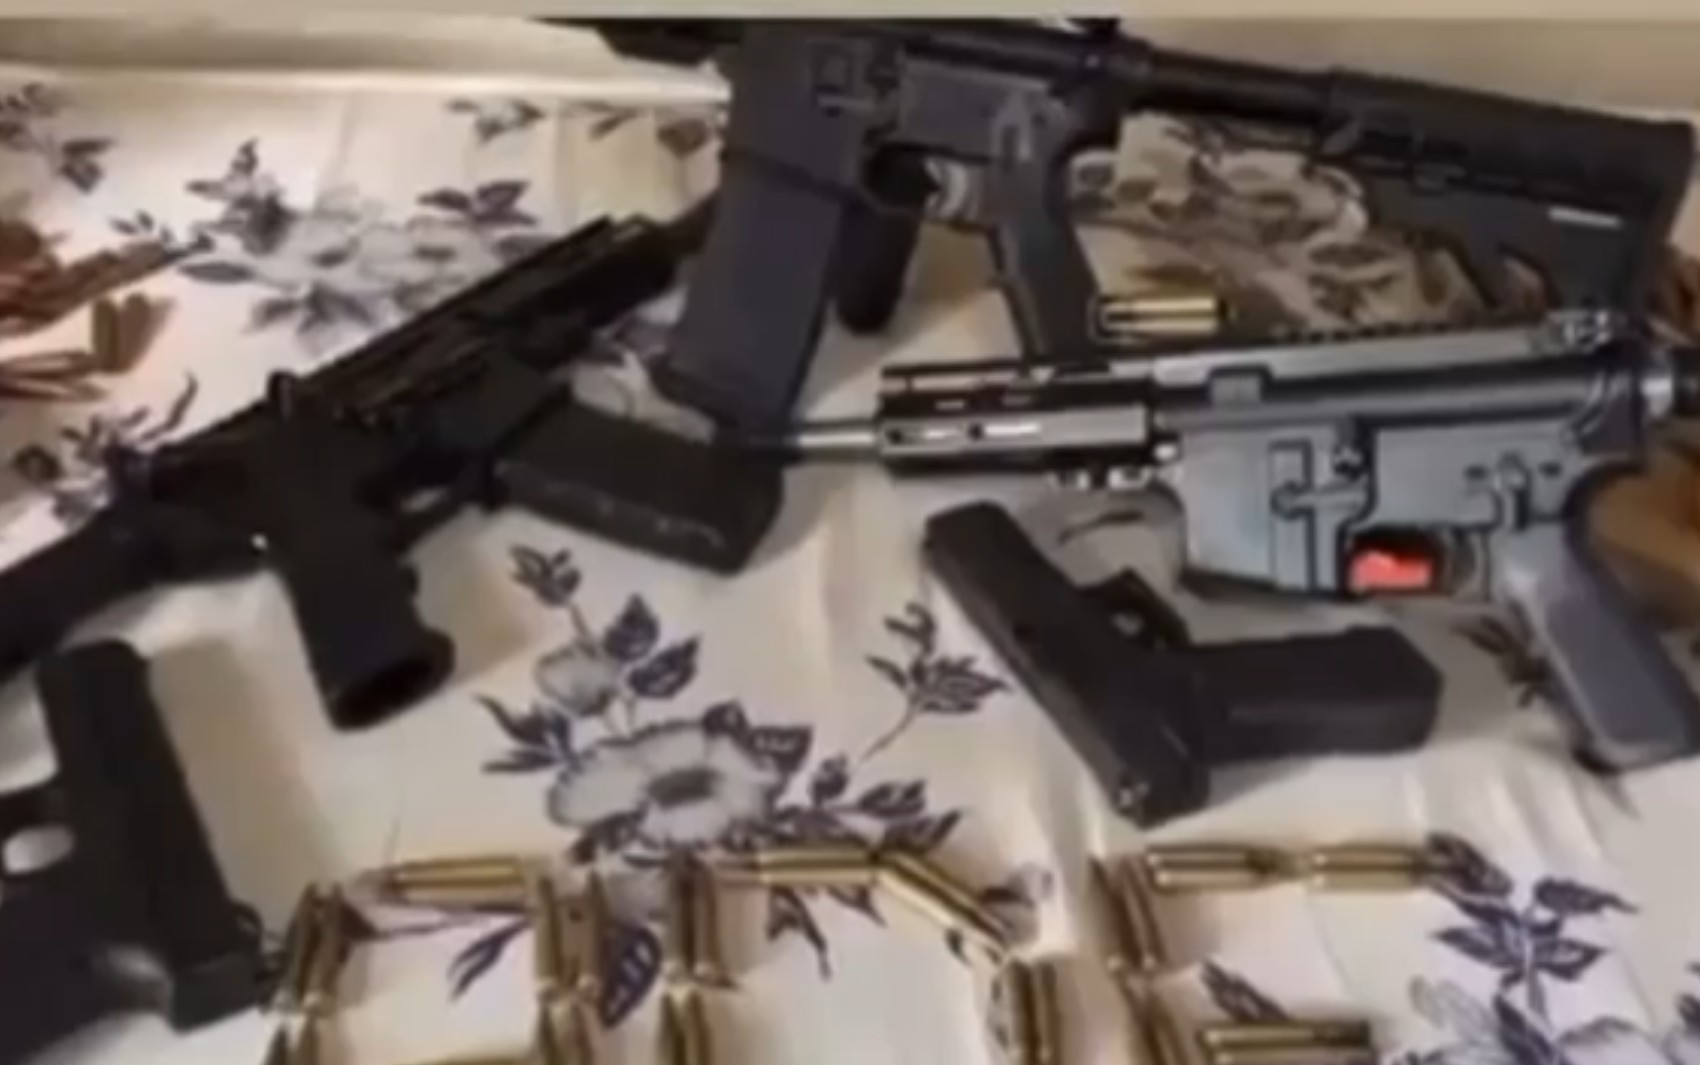 Operação identifica donos de fuzis e de mais de 500 munições após suspeitos ostentarem armas nas redes sociais, diz PF